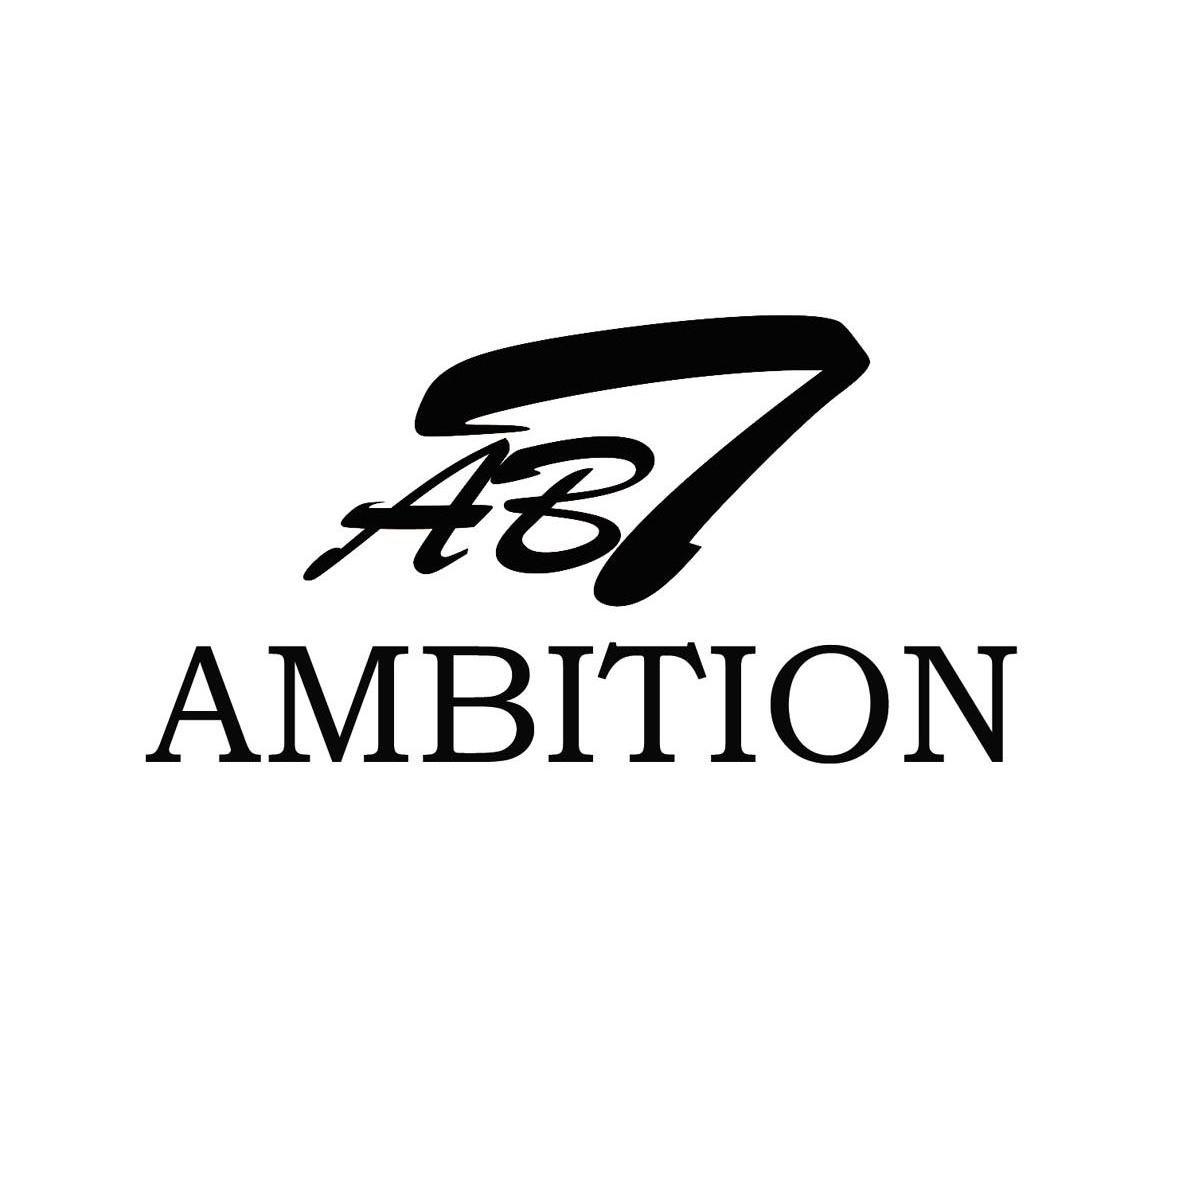 ambition字体图片